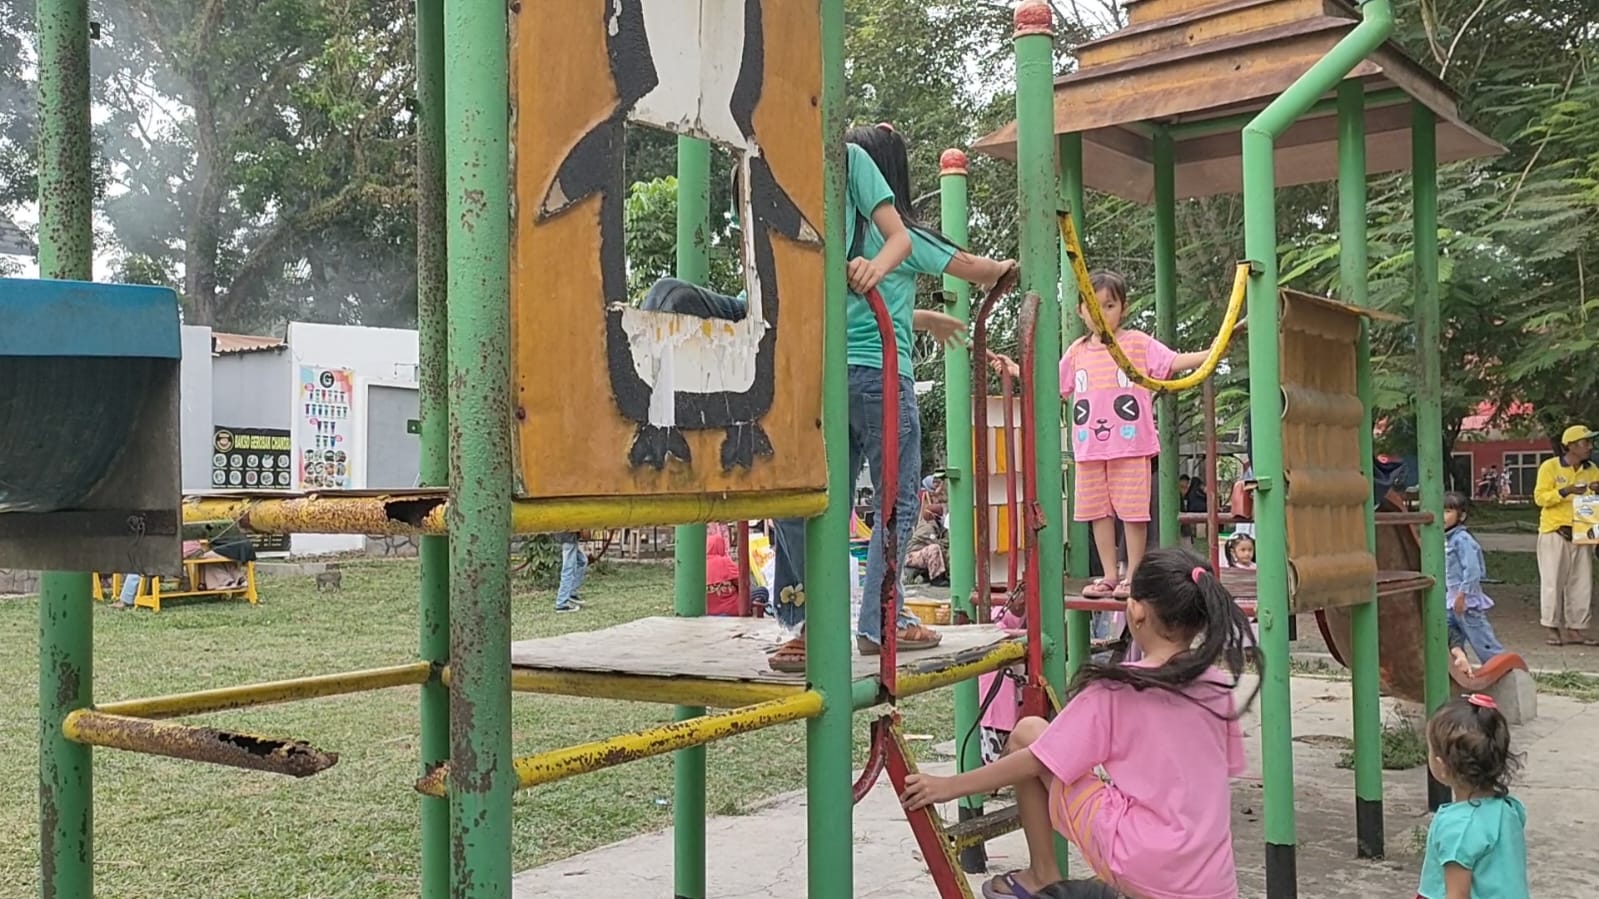 Membahayakan, Fasilitas Permainan Anak Taman Kota Banyak Rusak